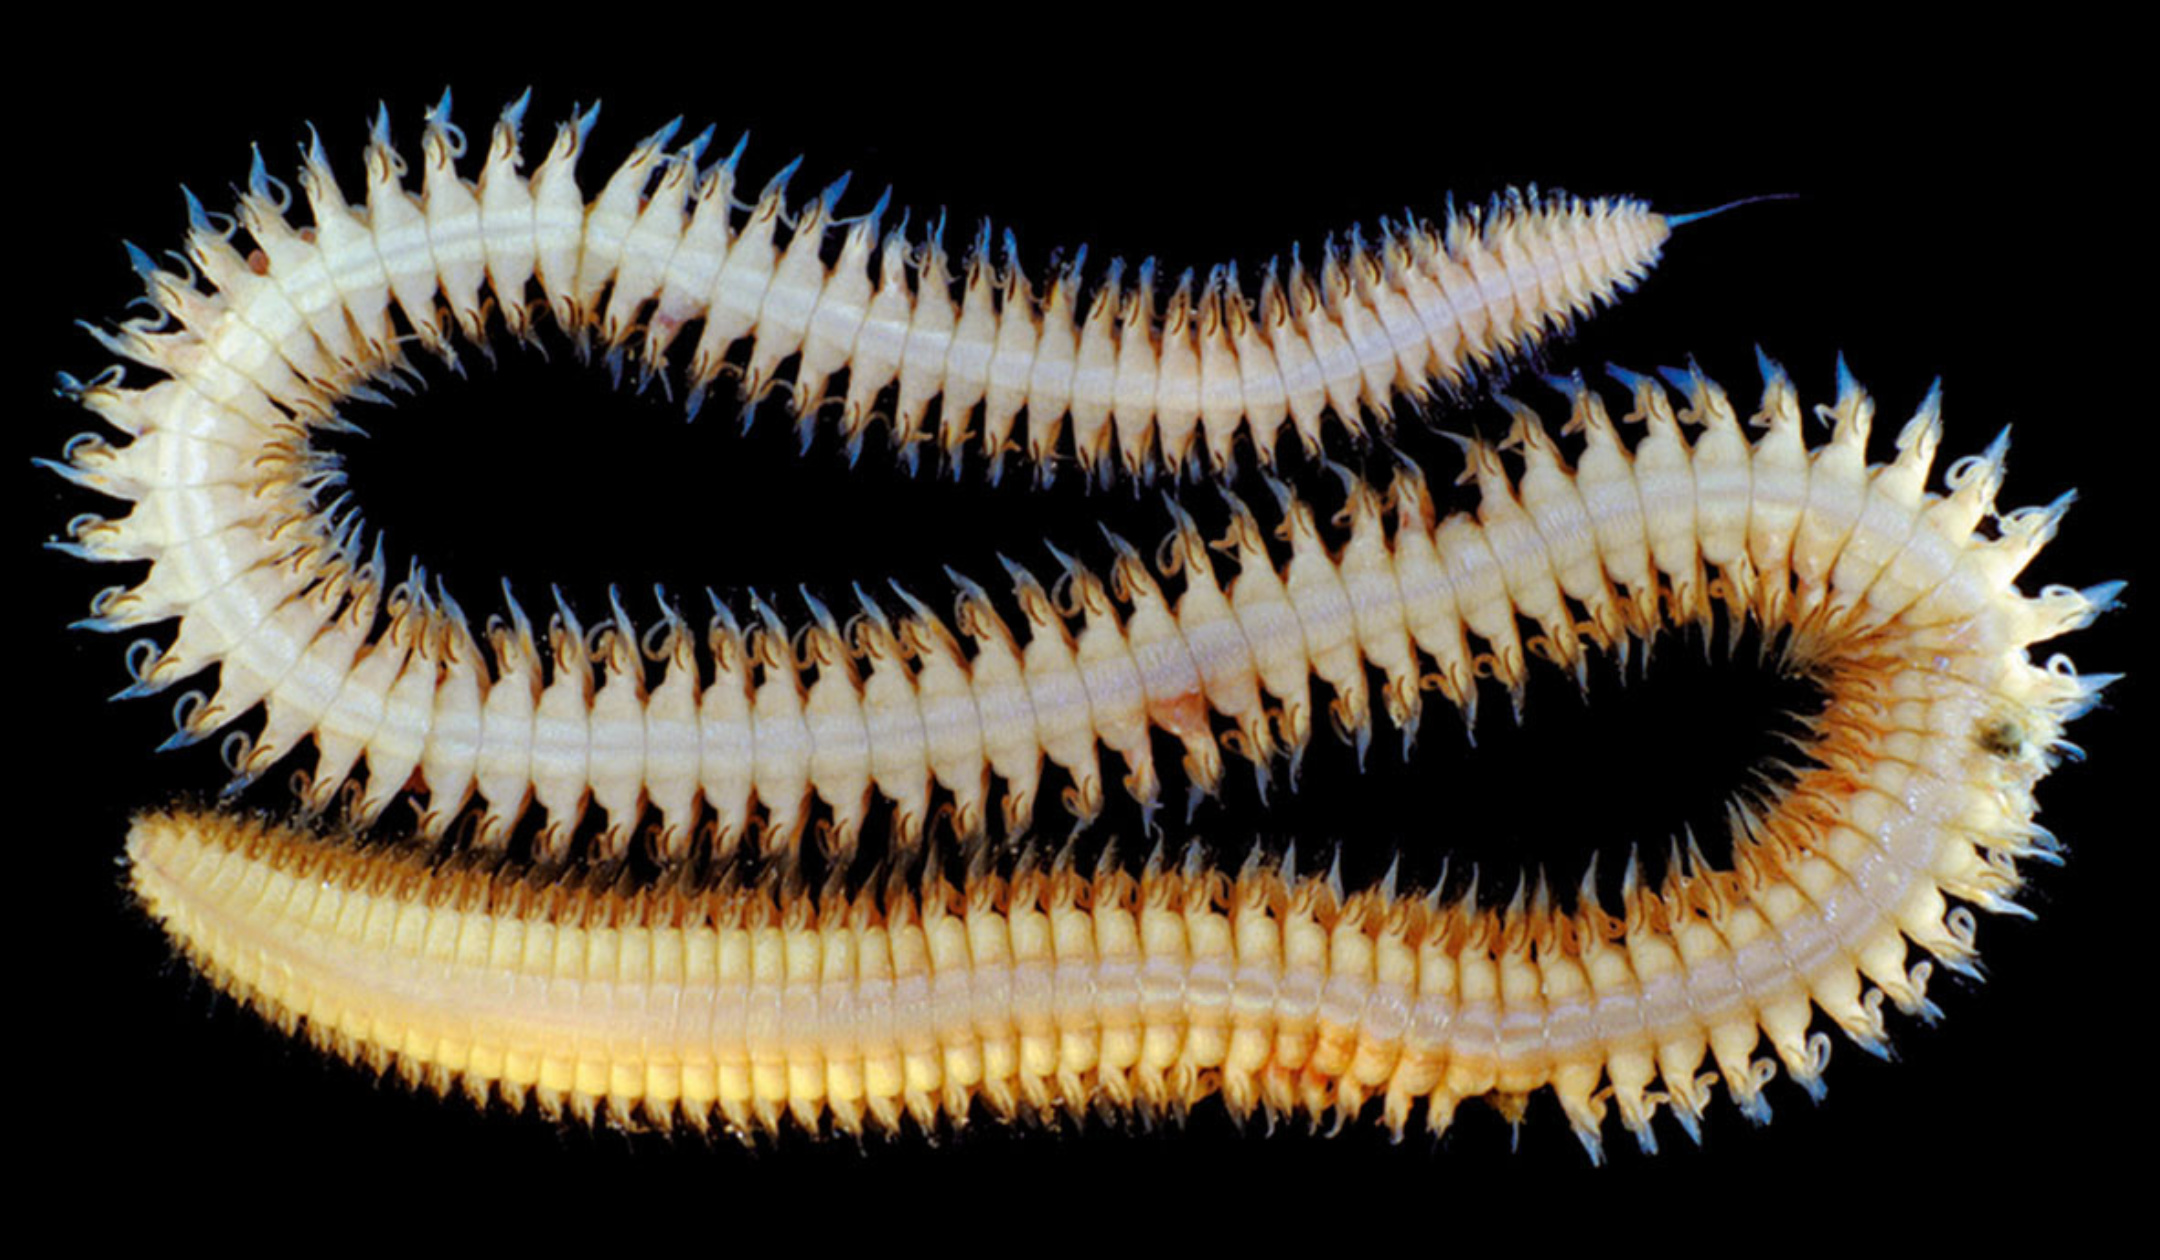 Червь сканворд. Многощетинковые черви многощетинковые черви. Морские многощетинковые черви. Многощетинковые морские черви полихеты. Морские многощетинковые черви морская мышь.